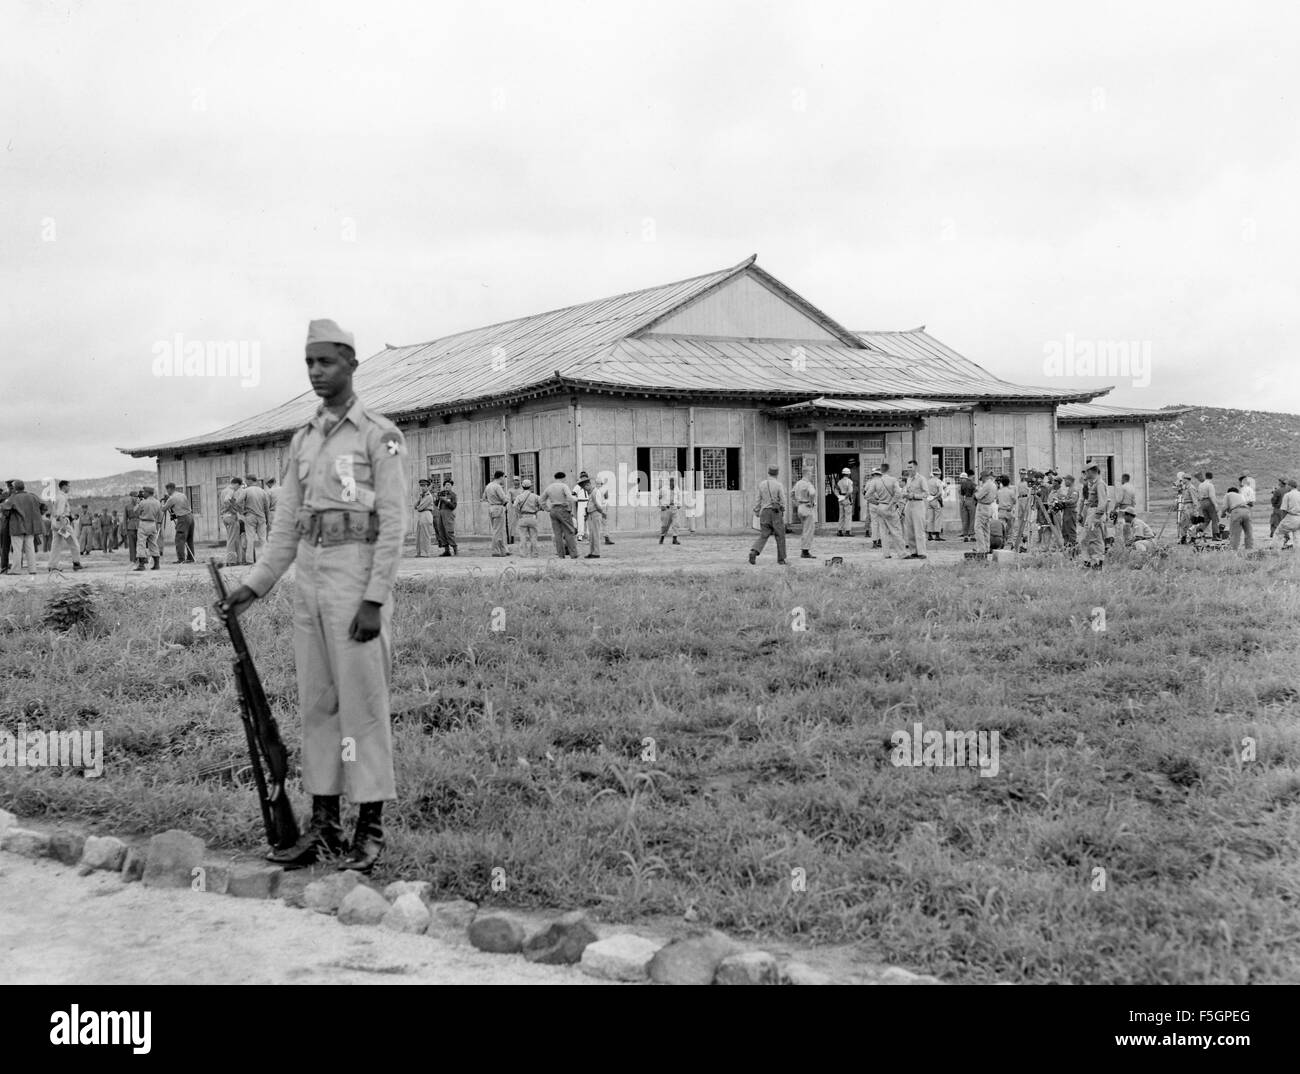 ARMISTICE DE LA GUERRE signé à Panmunjon 27 juillet 1953. Un soldat éthiopien monte la garde à l'extérieur du pavillon de la paix où la signature est en cours. Photo : Groupe de la Caméra de combat américaine du Pacifique. Banque D'Images